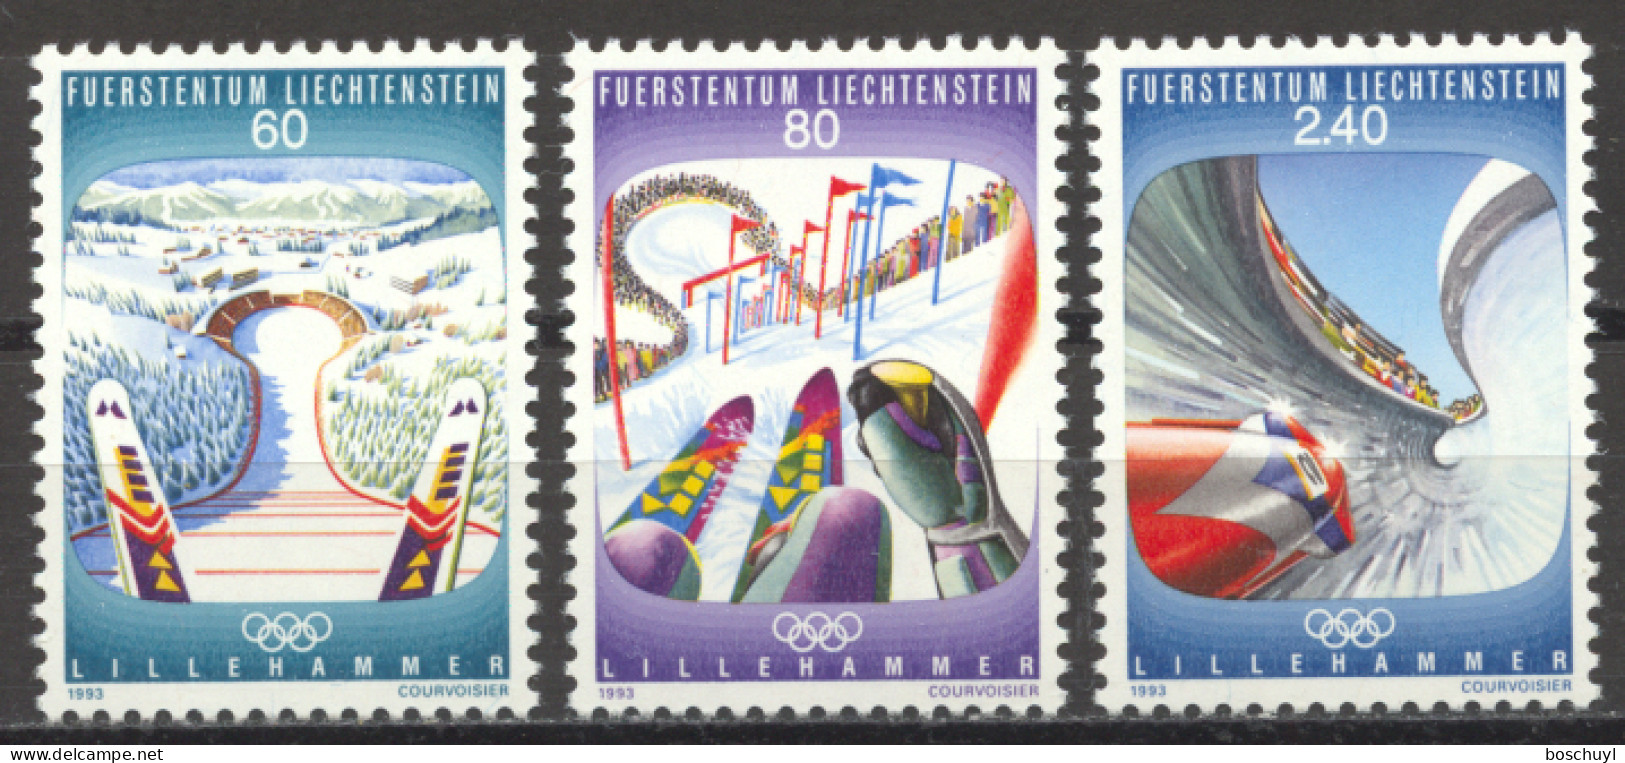 Liechtenstein, 1993, Olympic Winter Games Lillehammer, Sports, MNH, Michel 1076-1078 - Unused Stamps